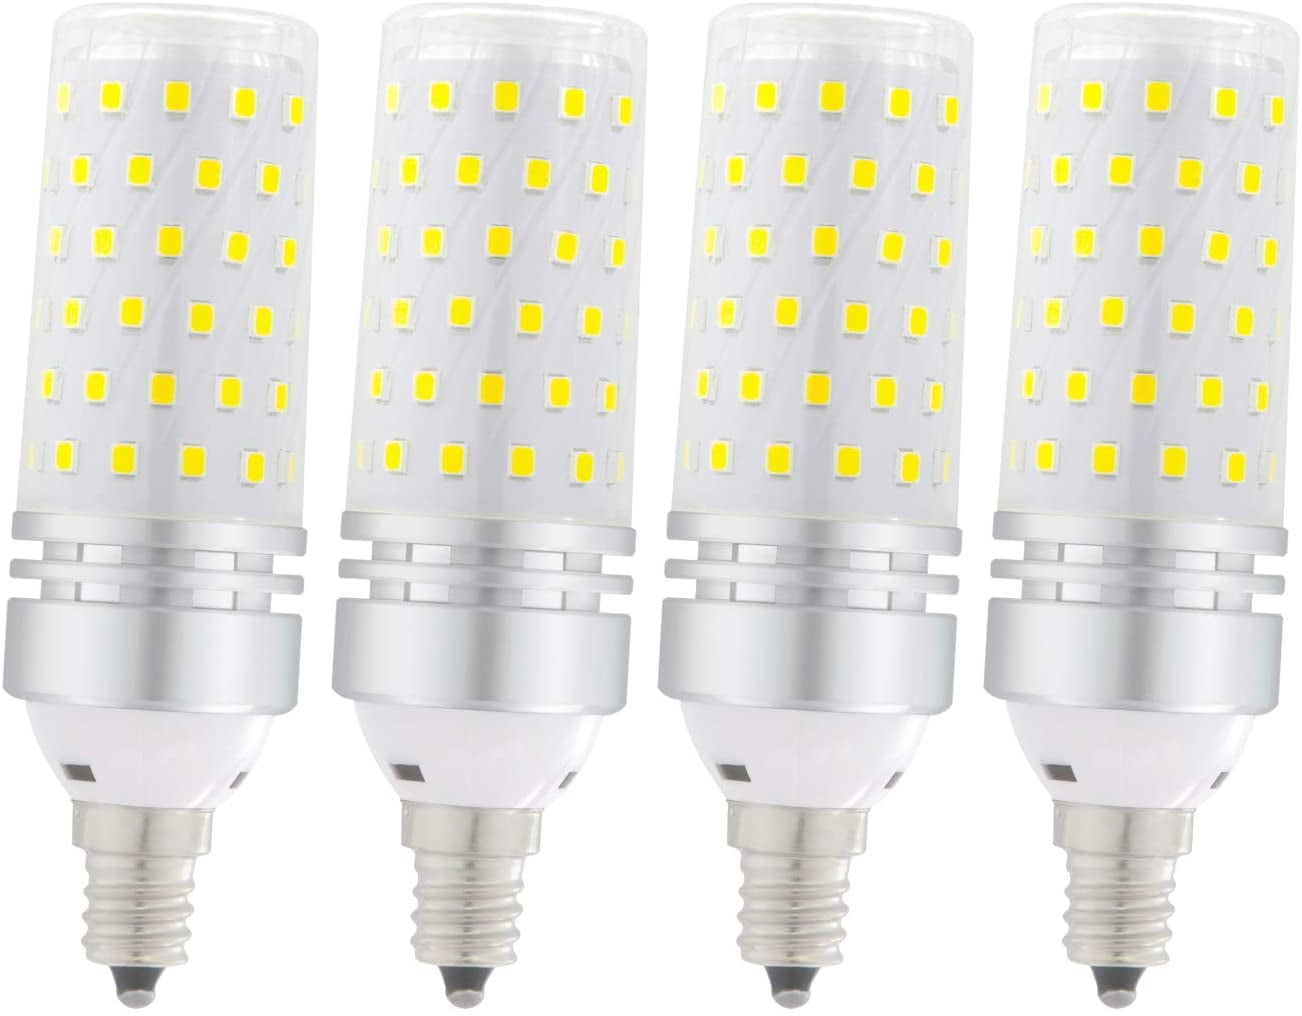 STVONO LED Corn Bulbs Home Lighting 1Pack 16W Warm White 3000K LED Candelabra Light Bulbs Non-Dimmable LED Lamp for Ceiling Fan CRI80+ LED Chandelier Bulbs E12 Base 1500LM 100W Equivalent 